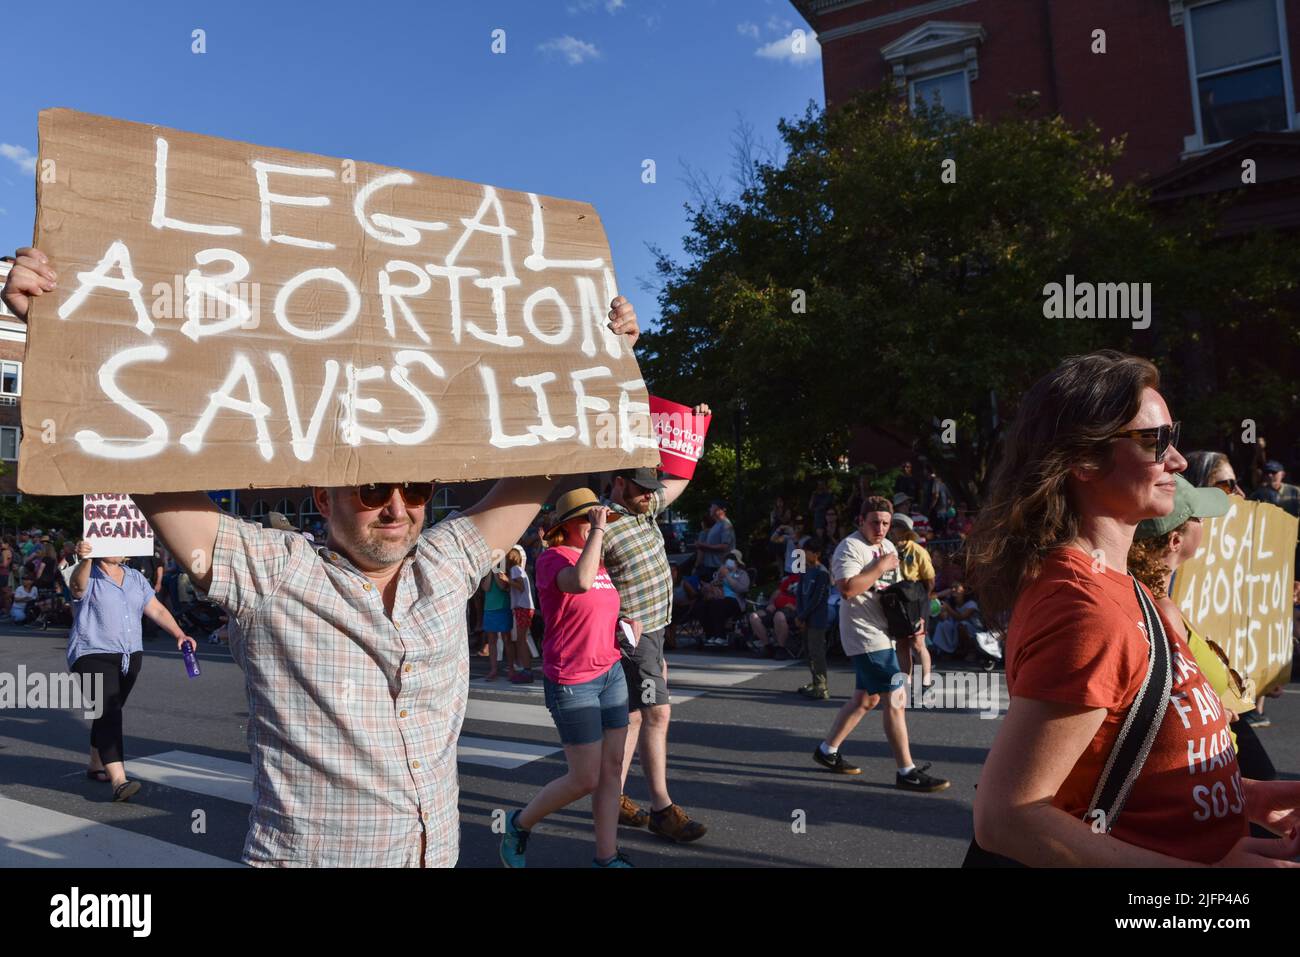 Defensores de los derechos al aborto que llevan carteles sobre los derechos al aborto marchan en el desfile de Montpelier, VT, USA, 4 de julio. Foto de stock